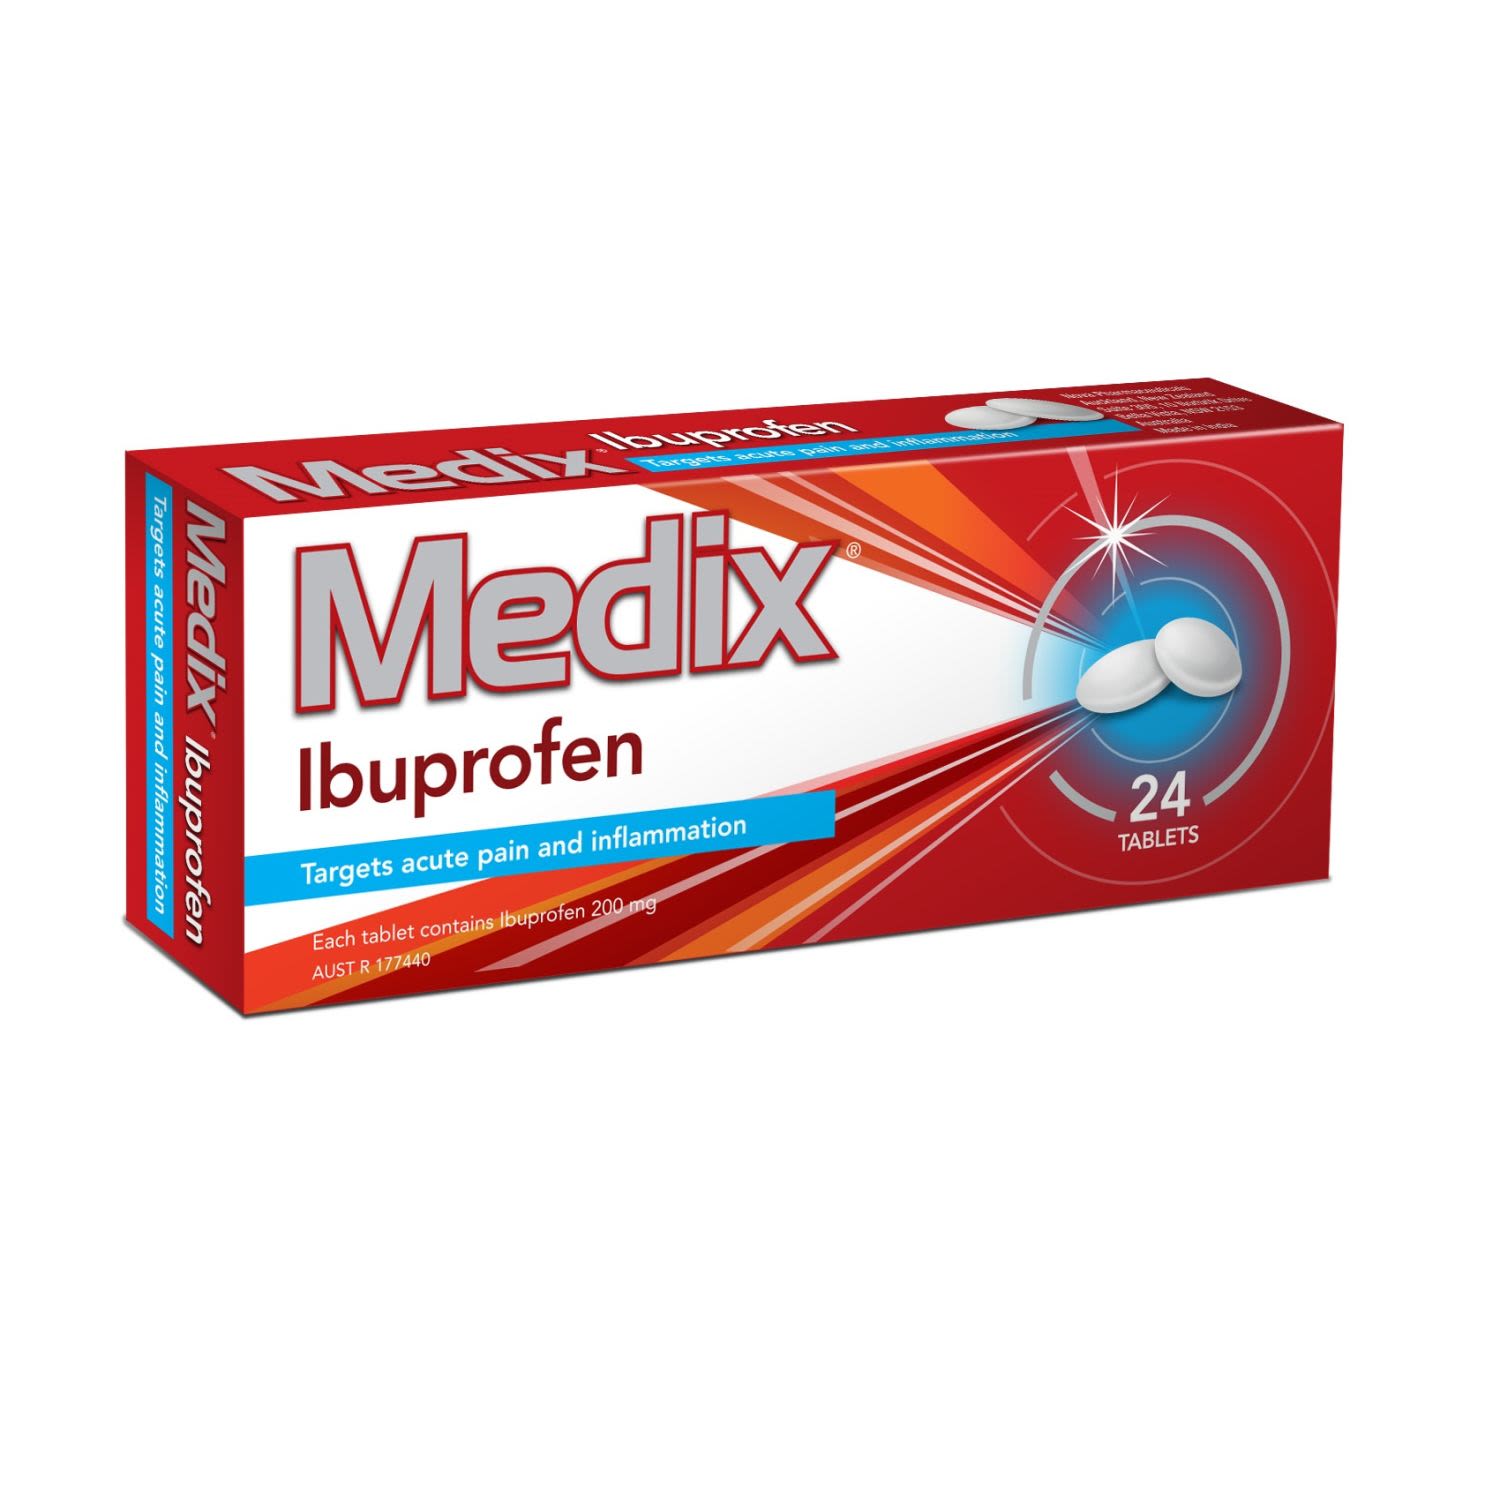 Medix Ibuprofen Tablets, 24 Each